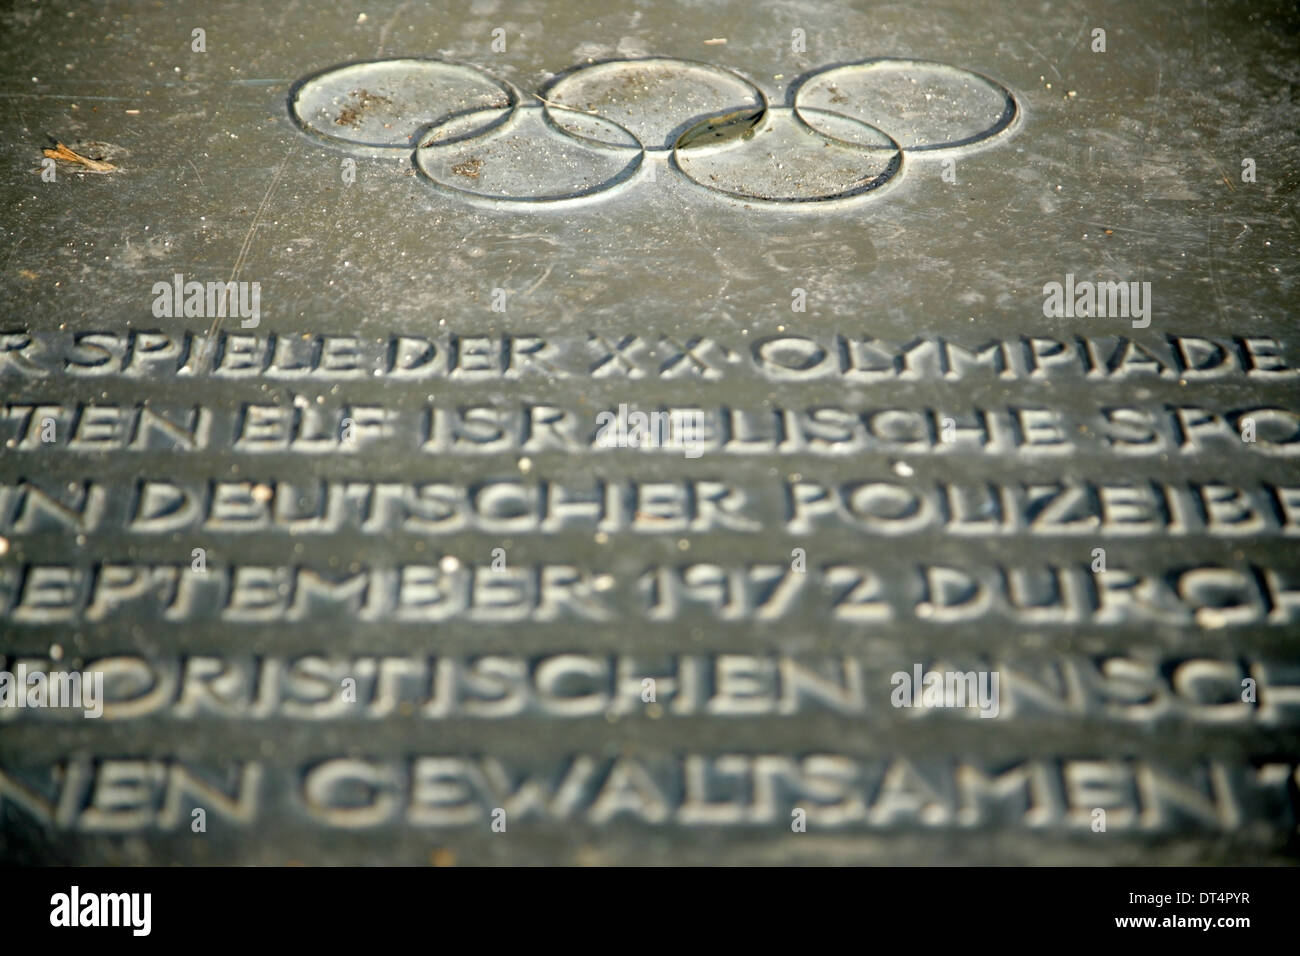 Mémorial pour les athlètes israéliens tués par les terroristes de Septembre Noir lors des Jeux Olympiques de Munich de 1972 les attaques terroristes. Banque D'Images